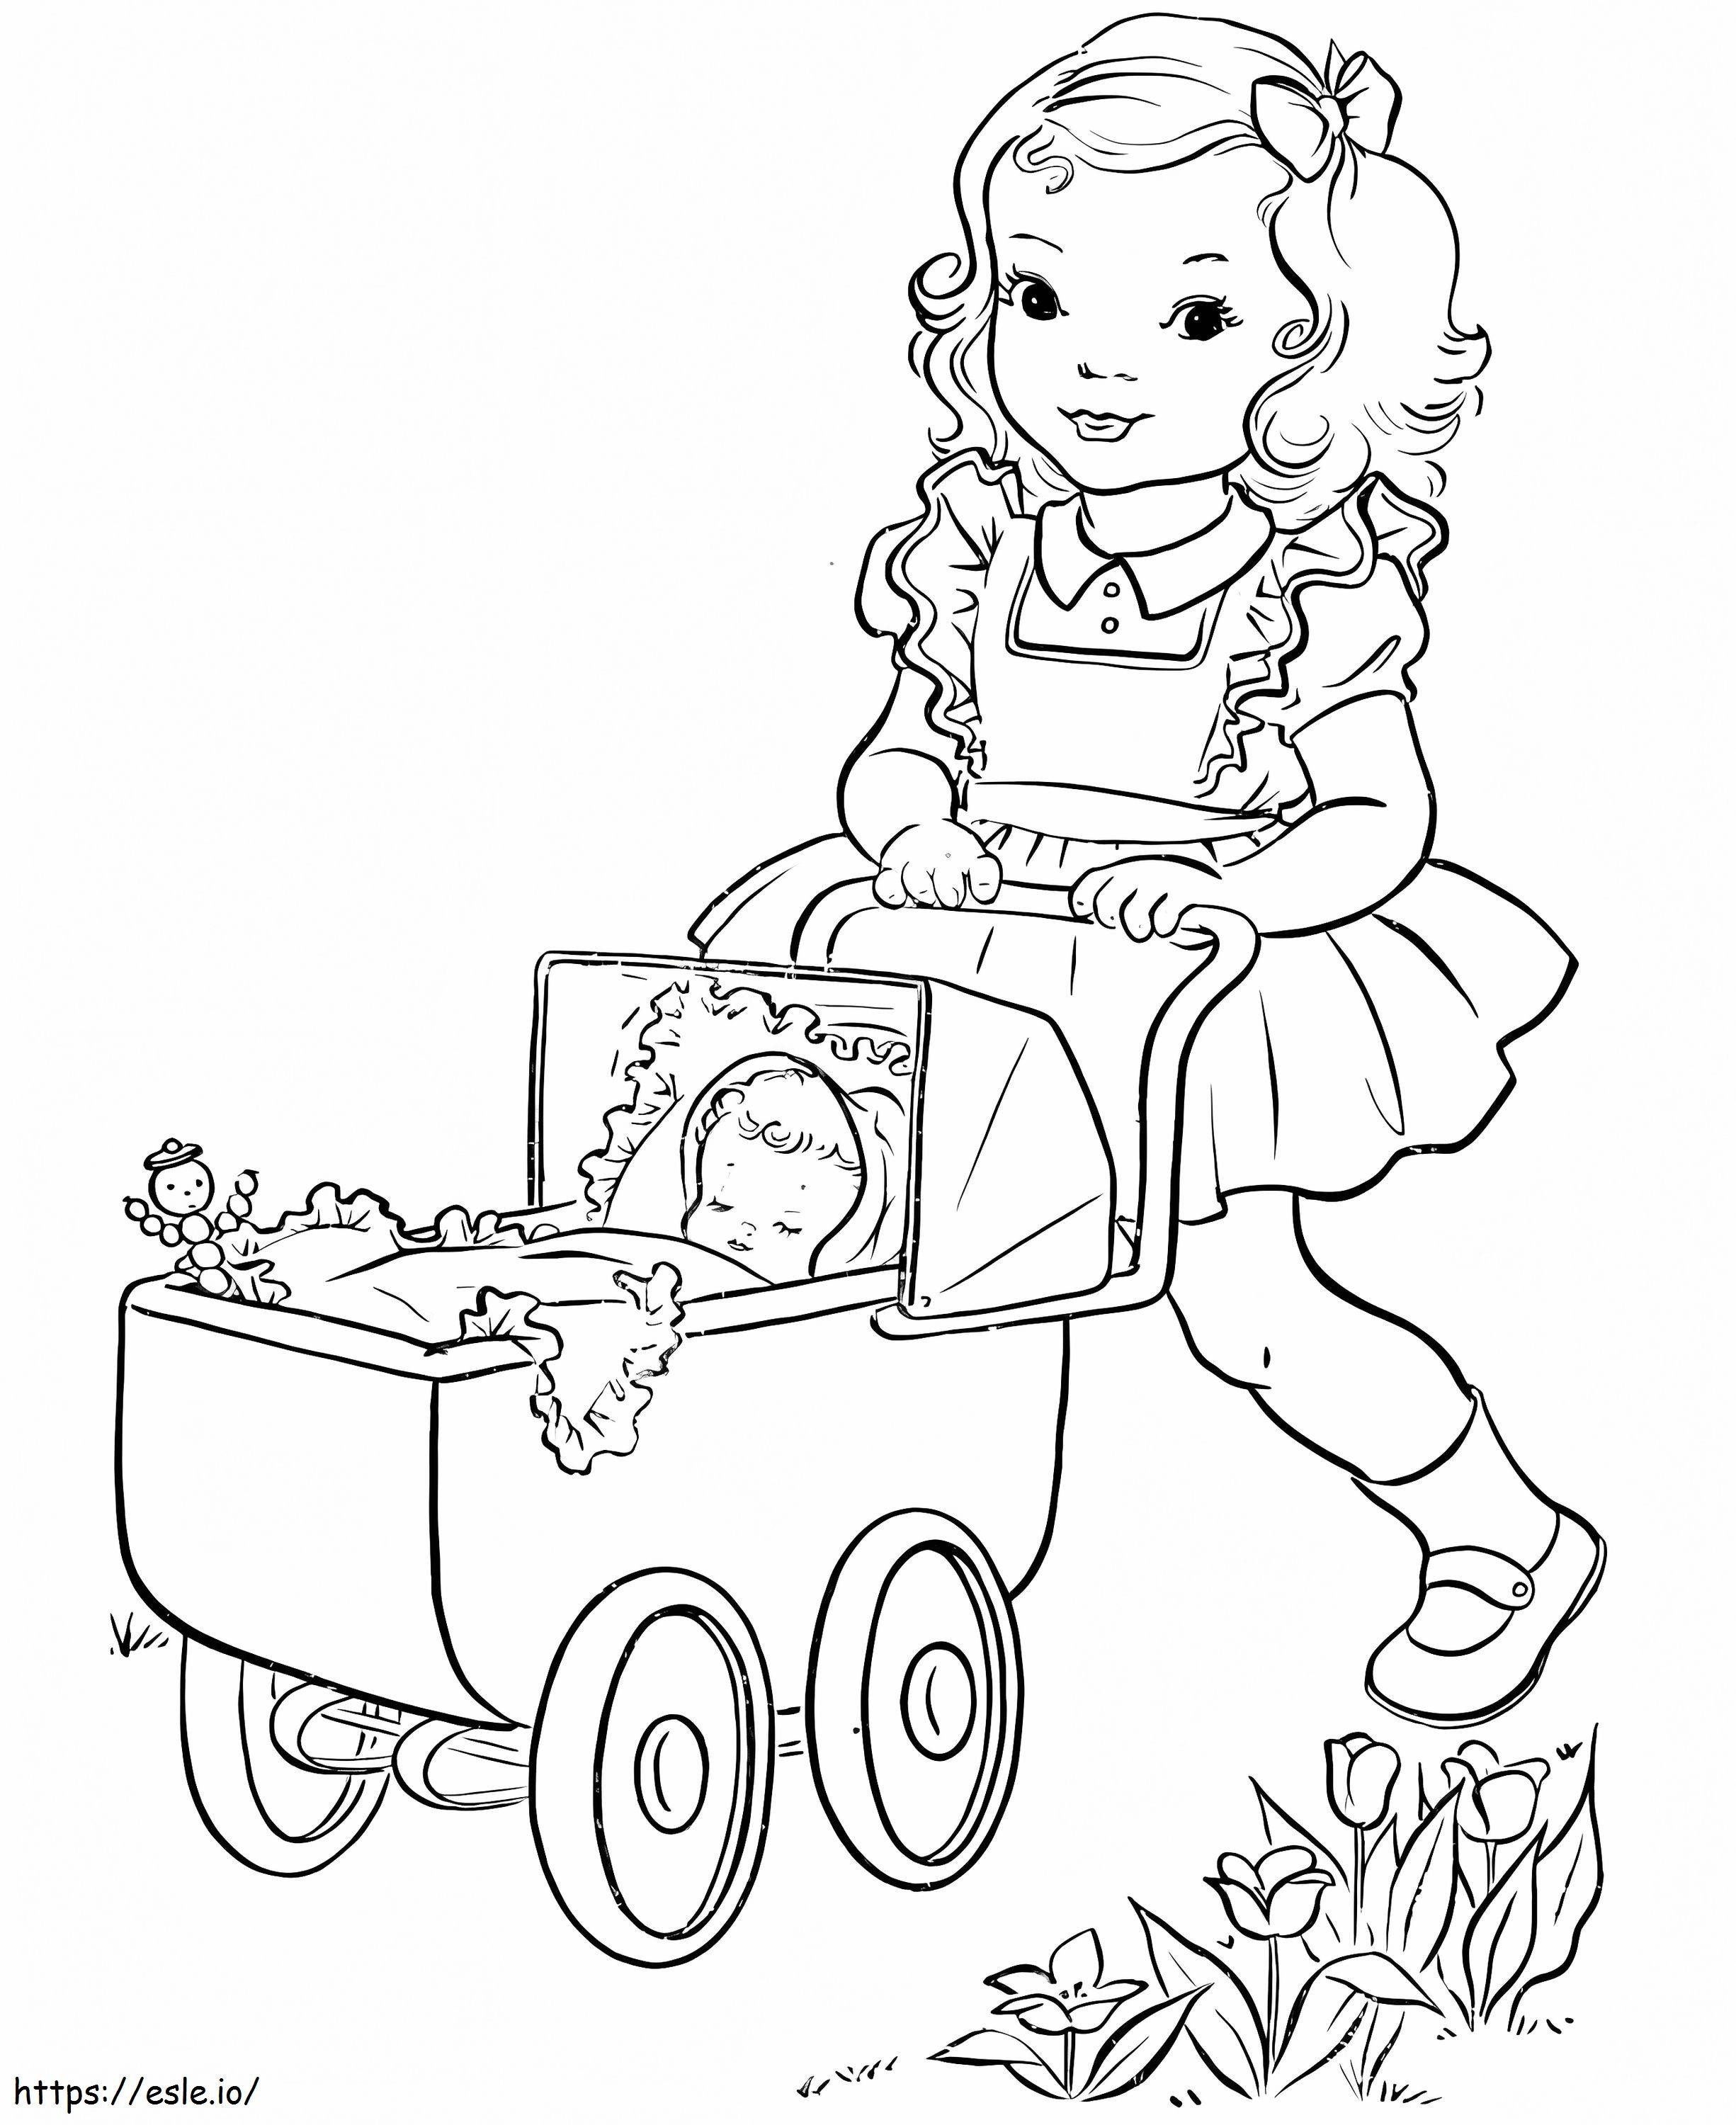 Een baby in een kinderwagen kleurplaat kleurplaat